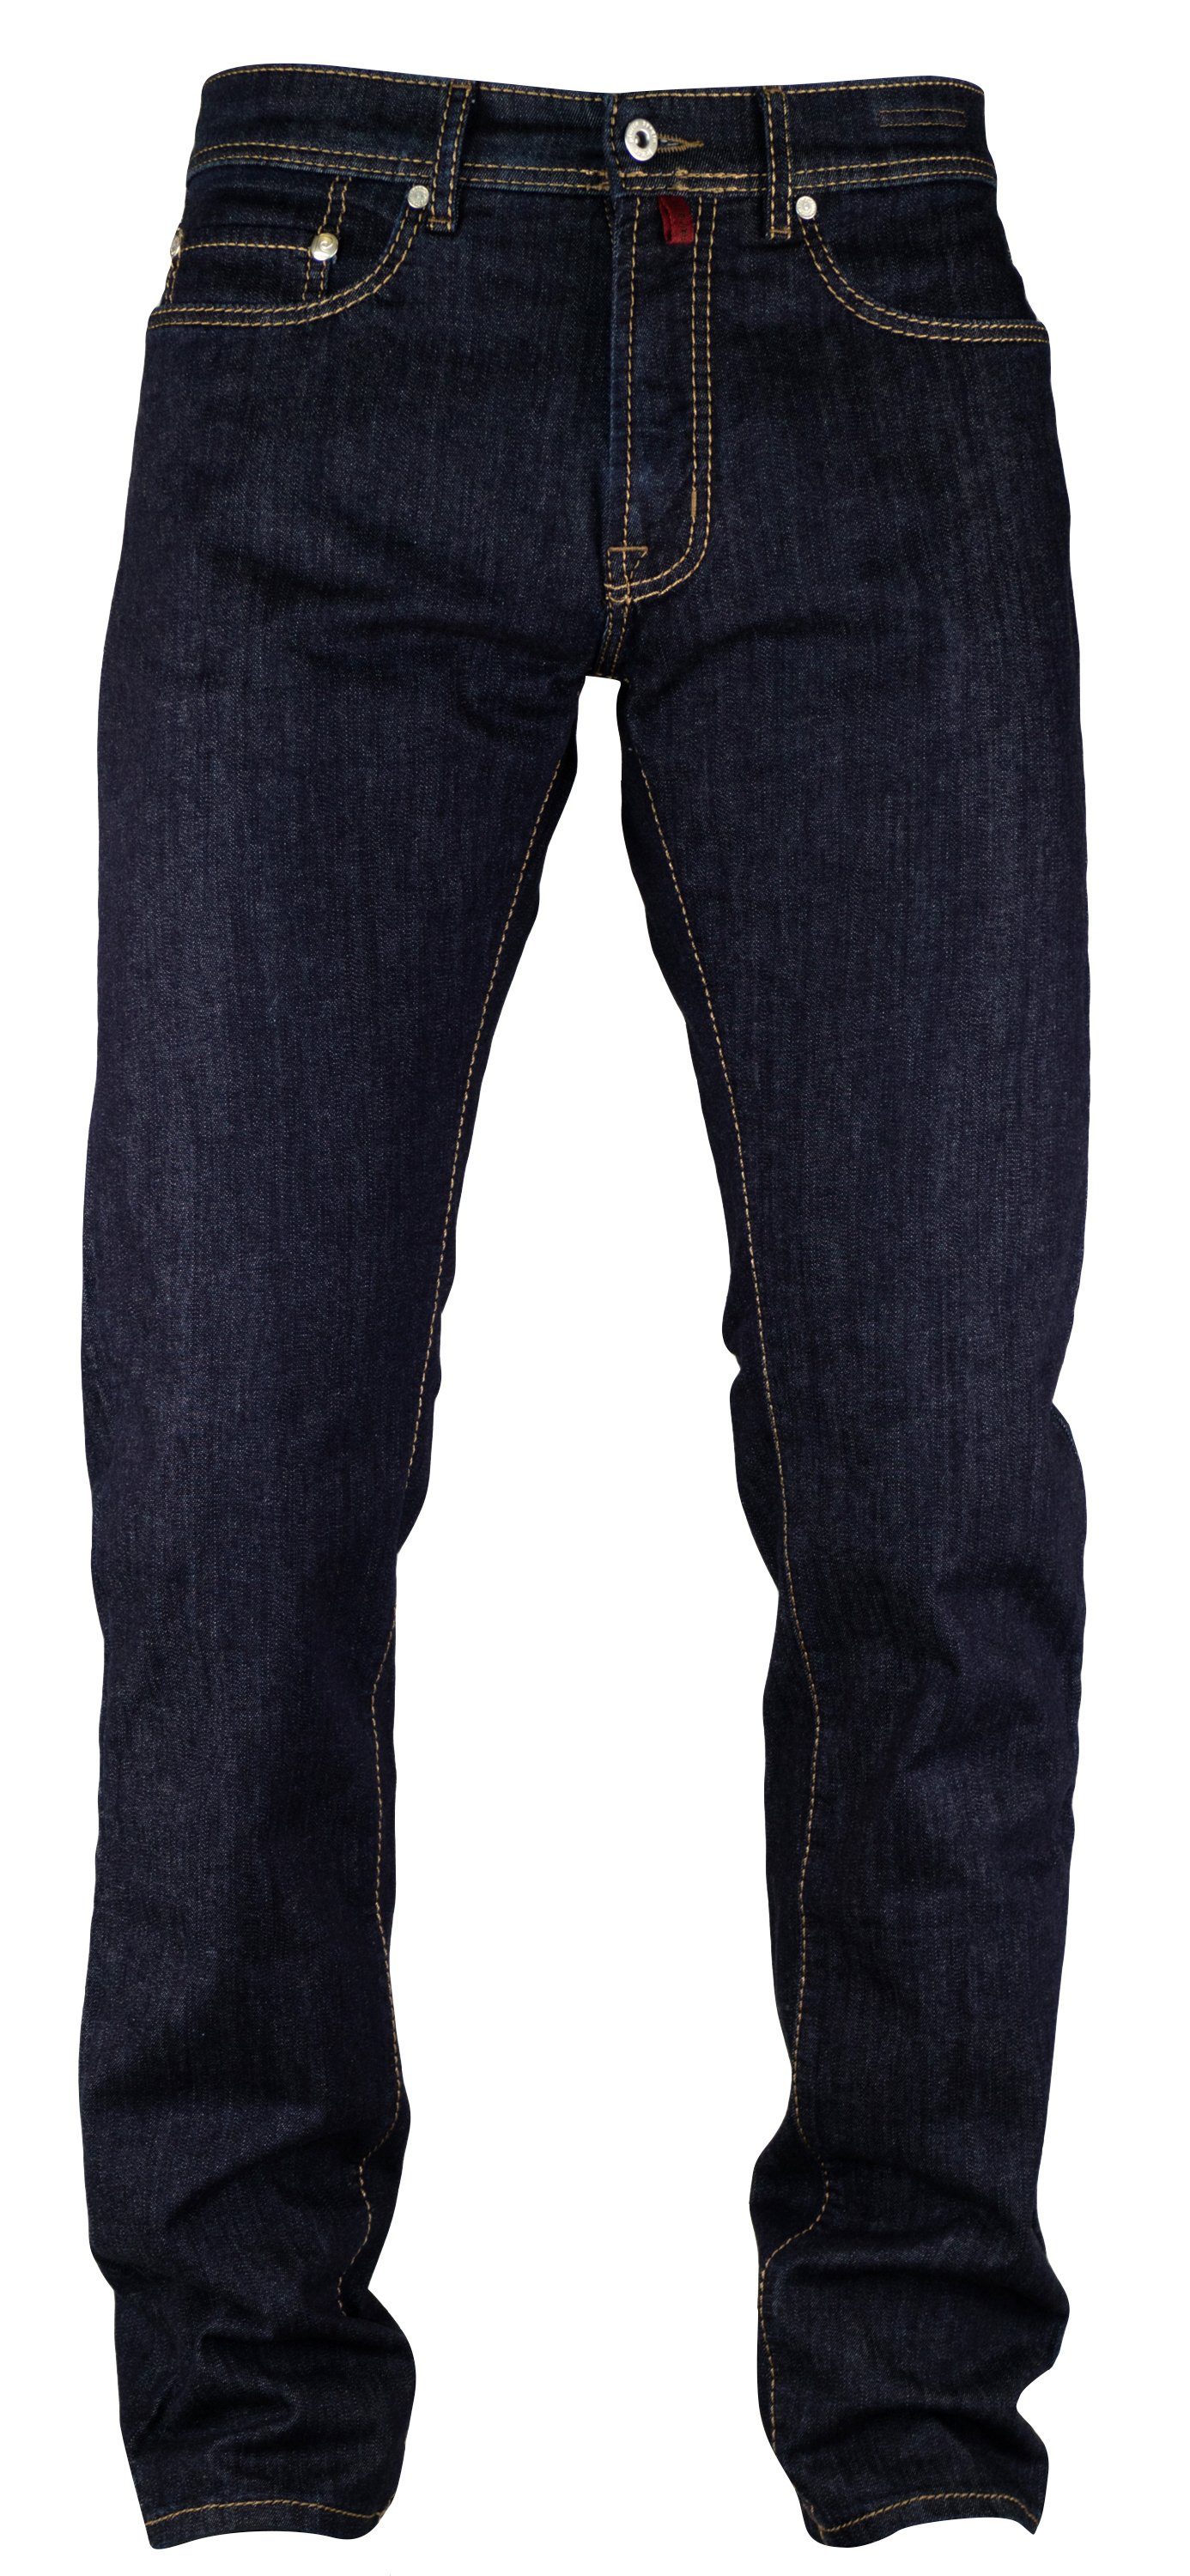 blue CARDIN 5-Pocket-Jeans Pierre mid LYON vintage Cardin Blue 7144.04 PIERRE used Clear washed 3091